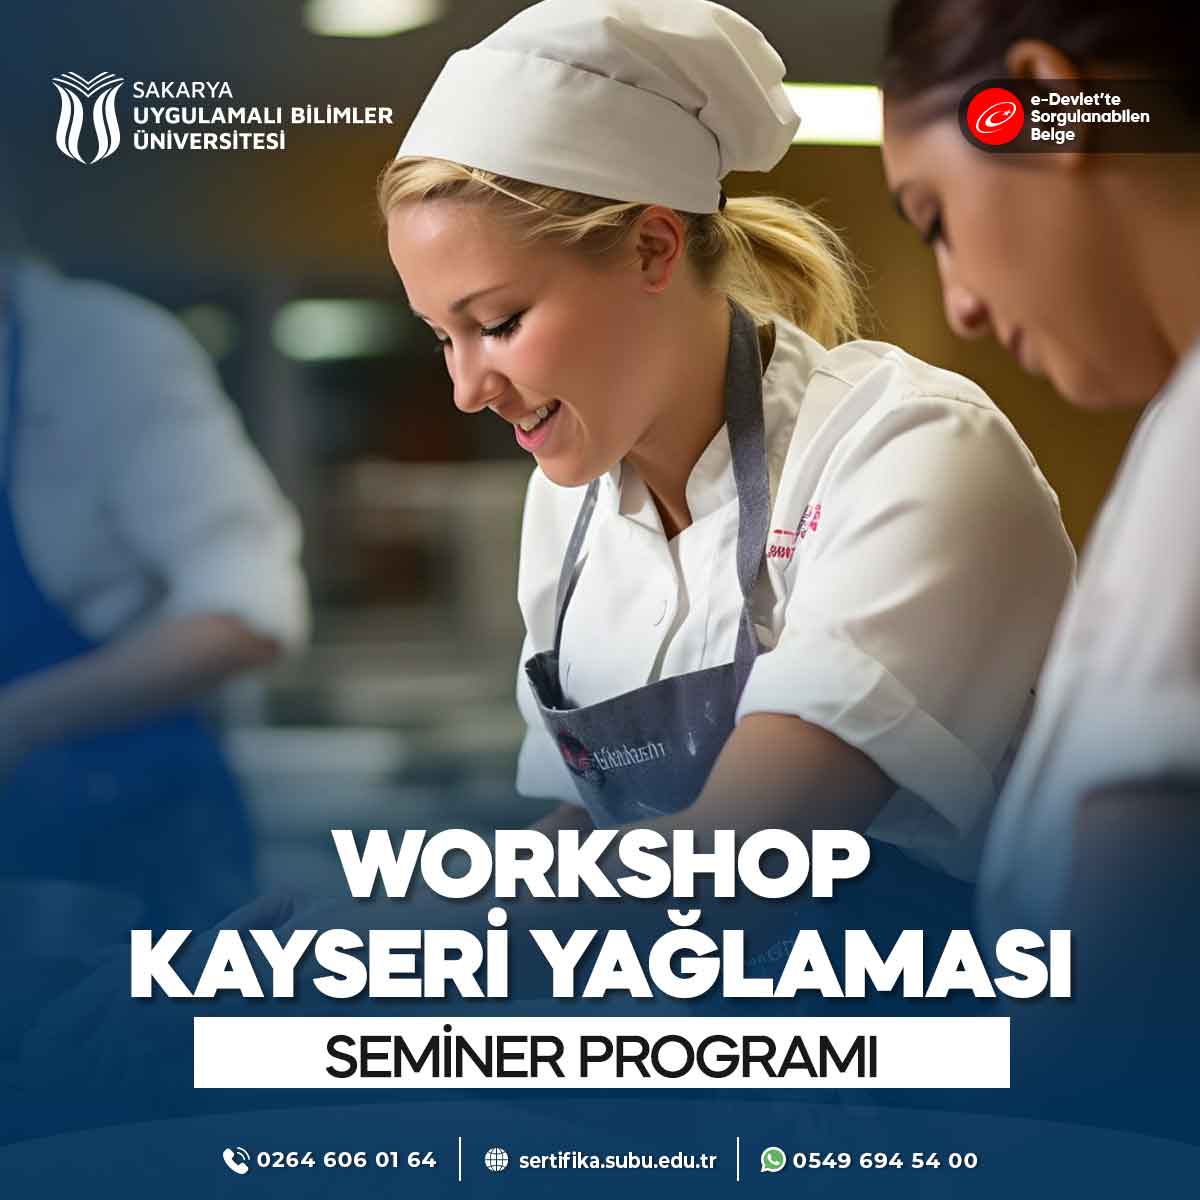 Workshop - Kayseri Yağlaması Semineri